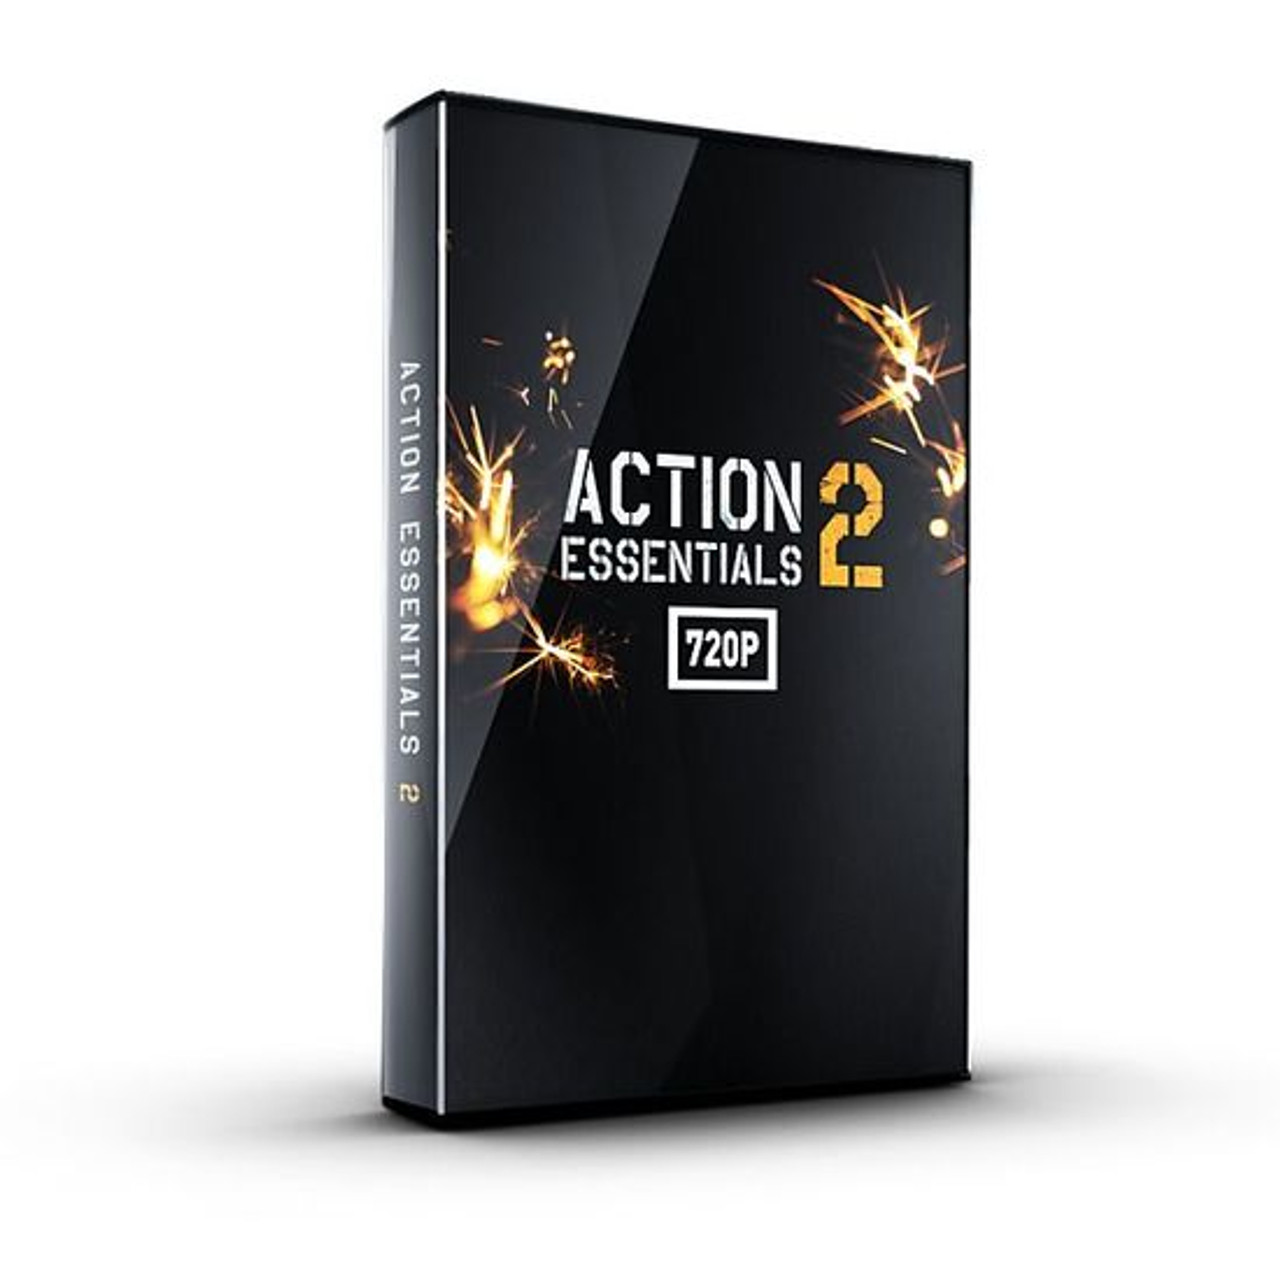 Action Essentials 2 720p